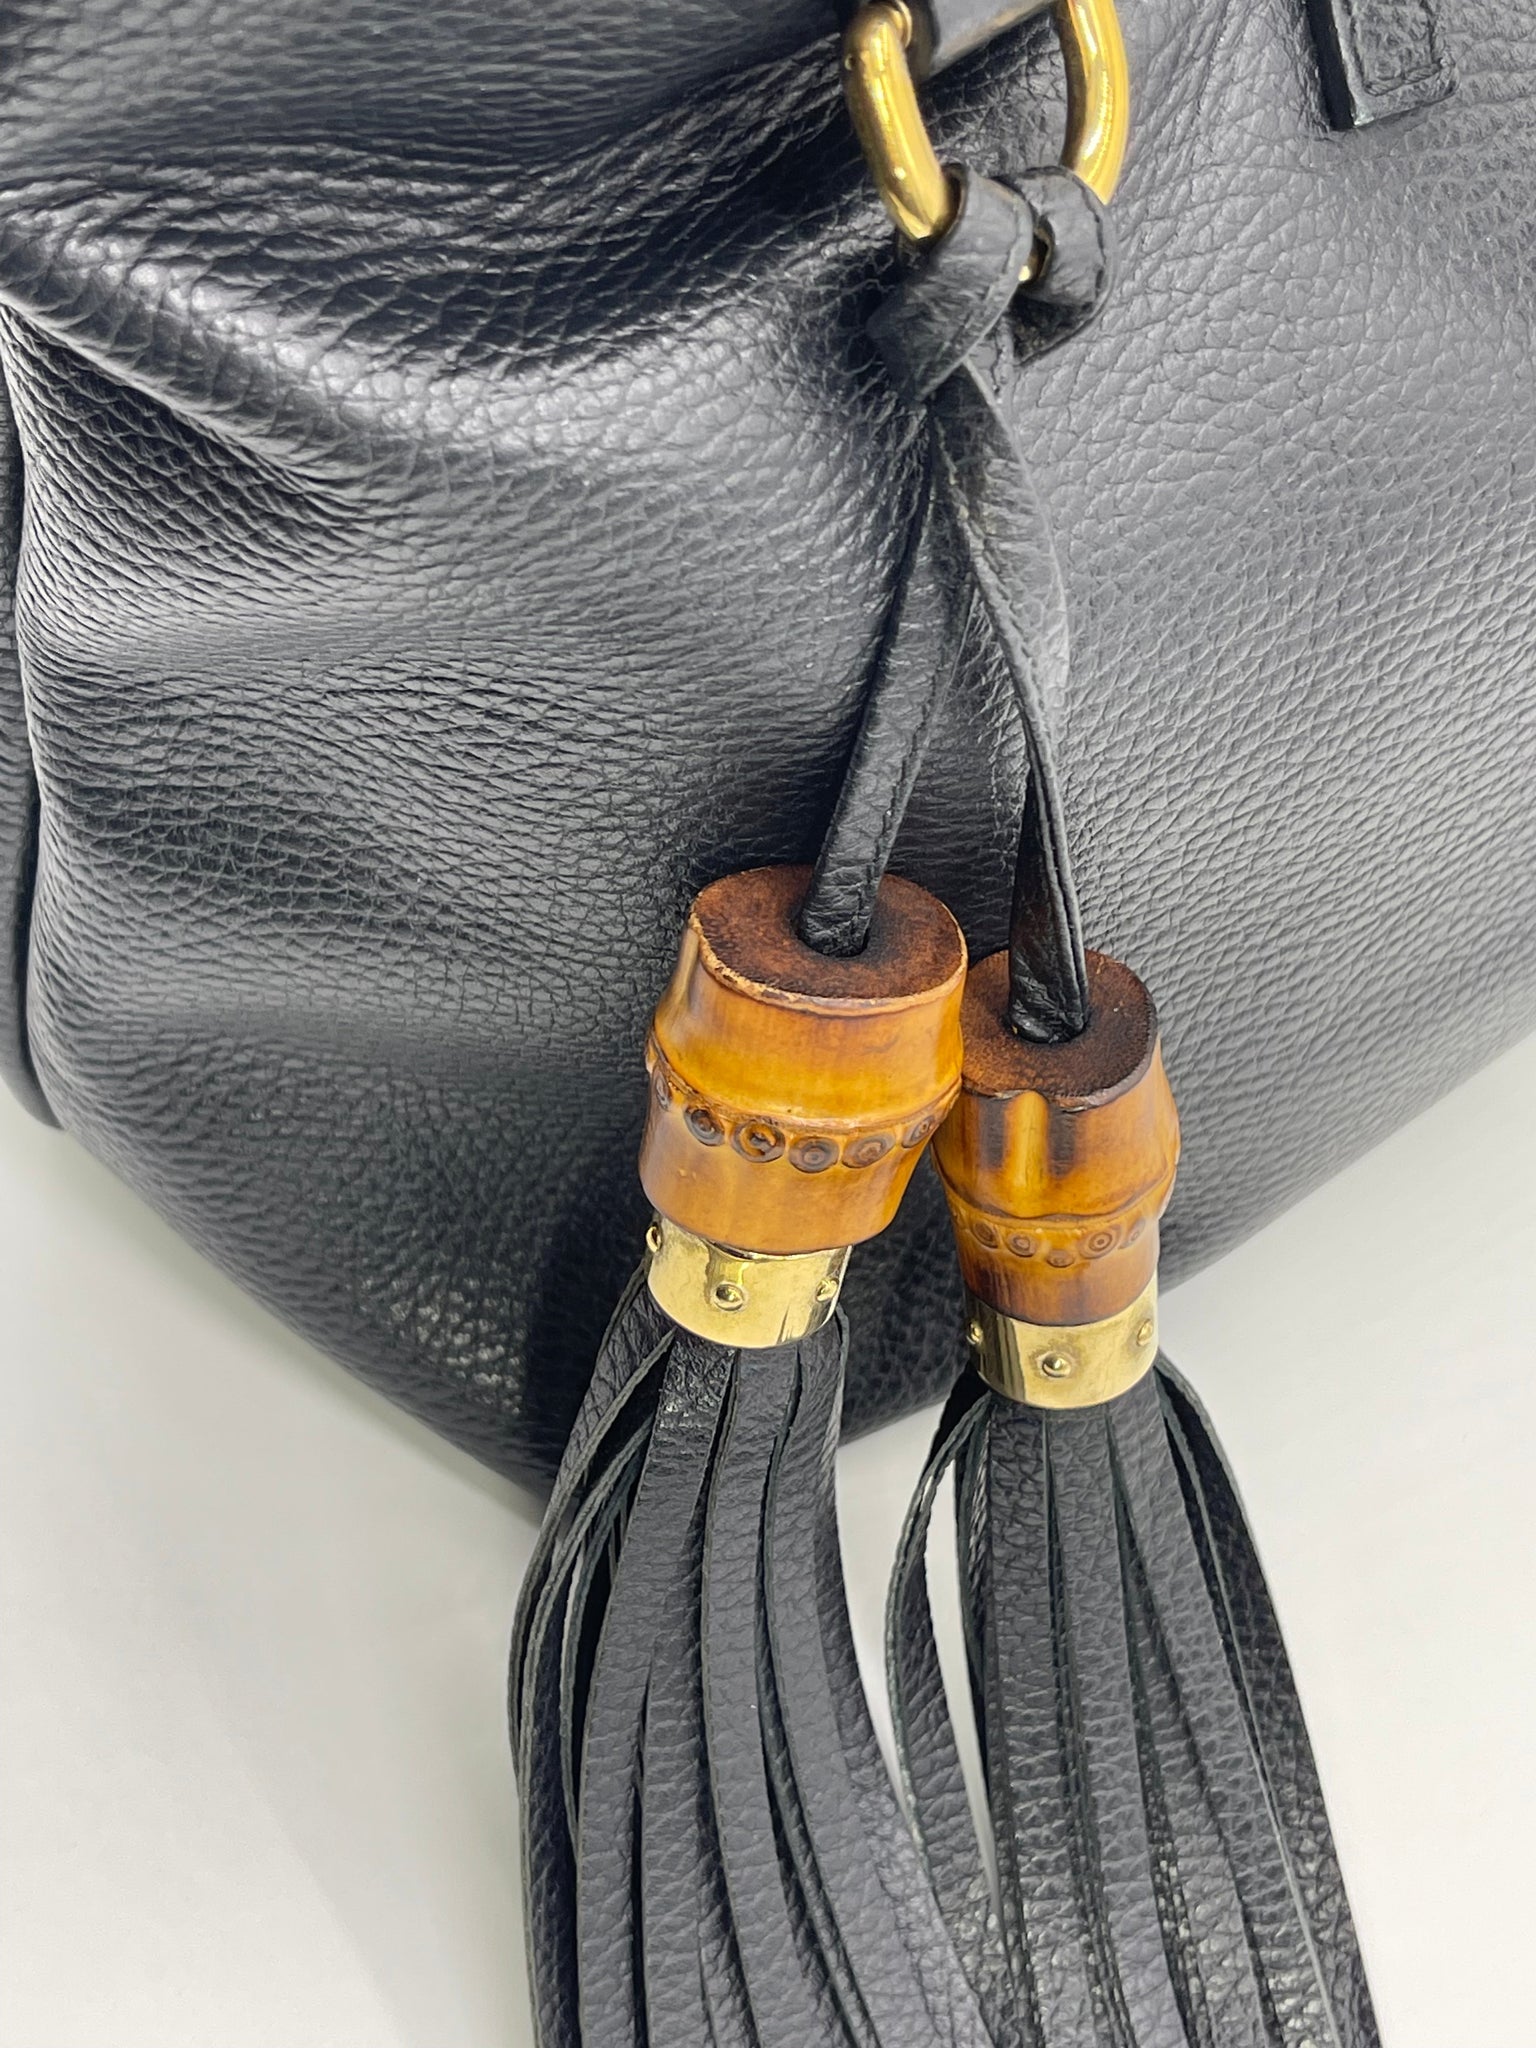 Preloved Gucci Black Leather Tote Shoulder Bag 354665520981 040523